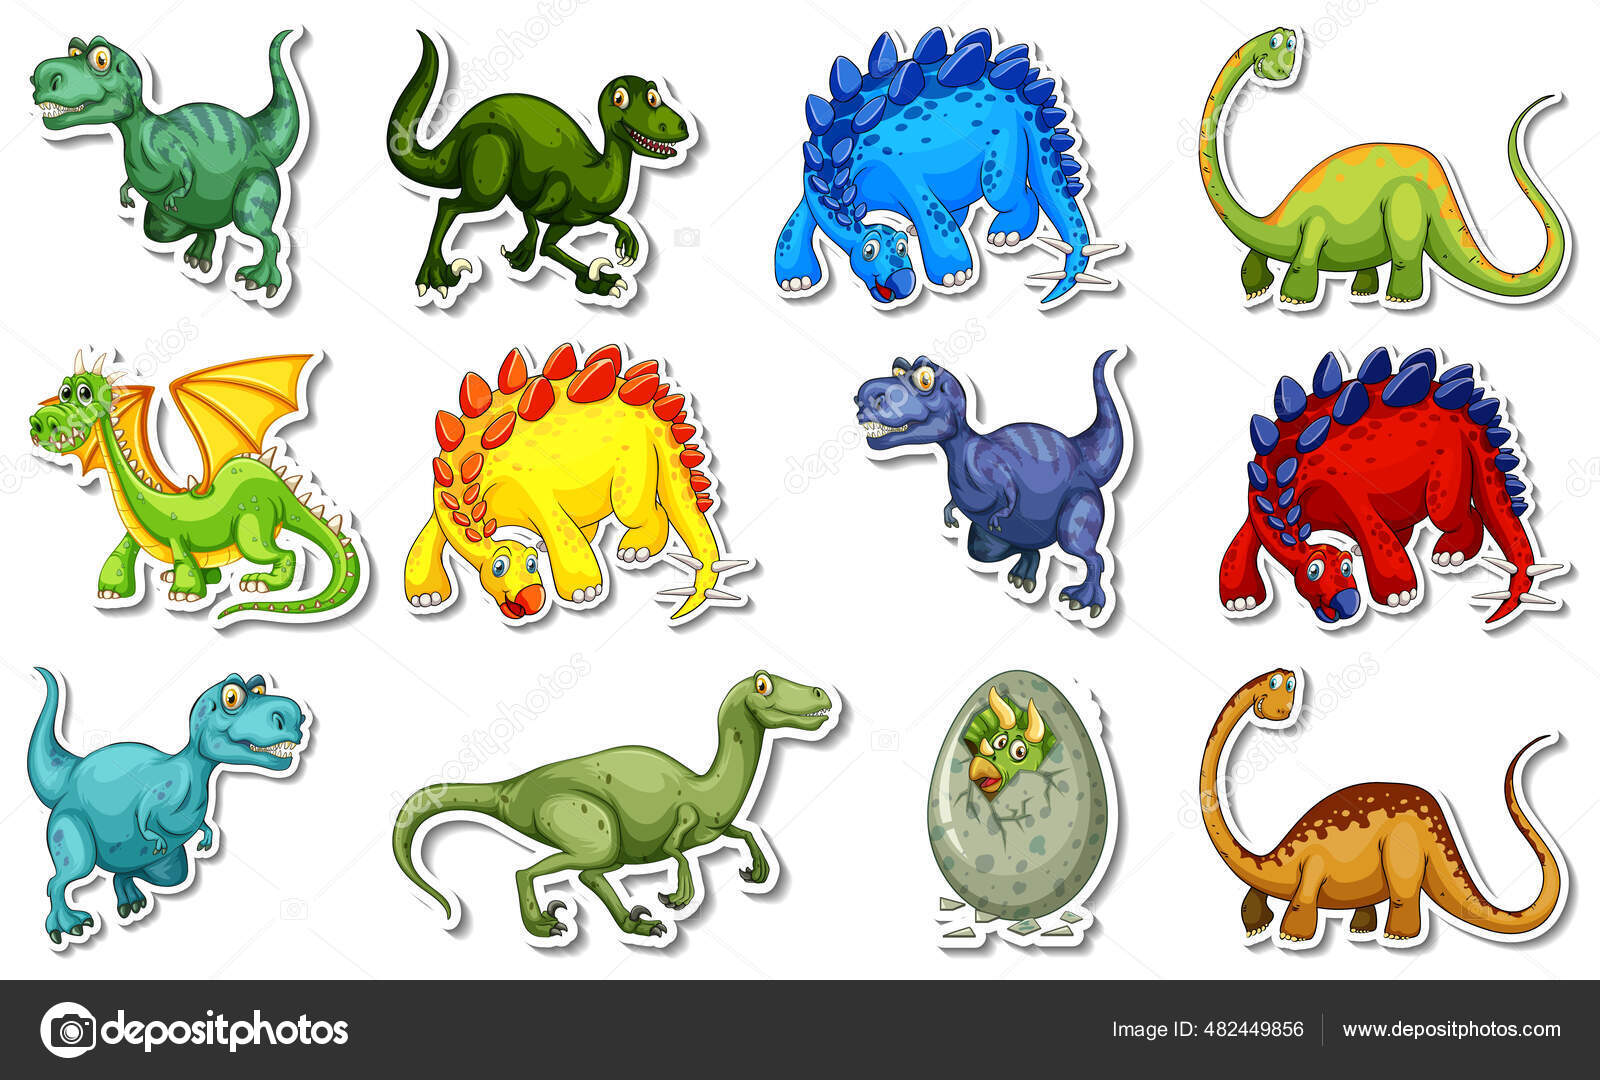 Adesivo com diferentes tipos de personagens de desenhos animados de  dinossauros